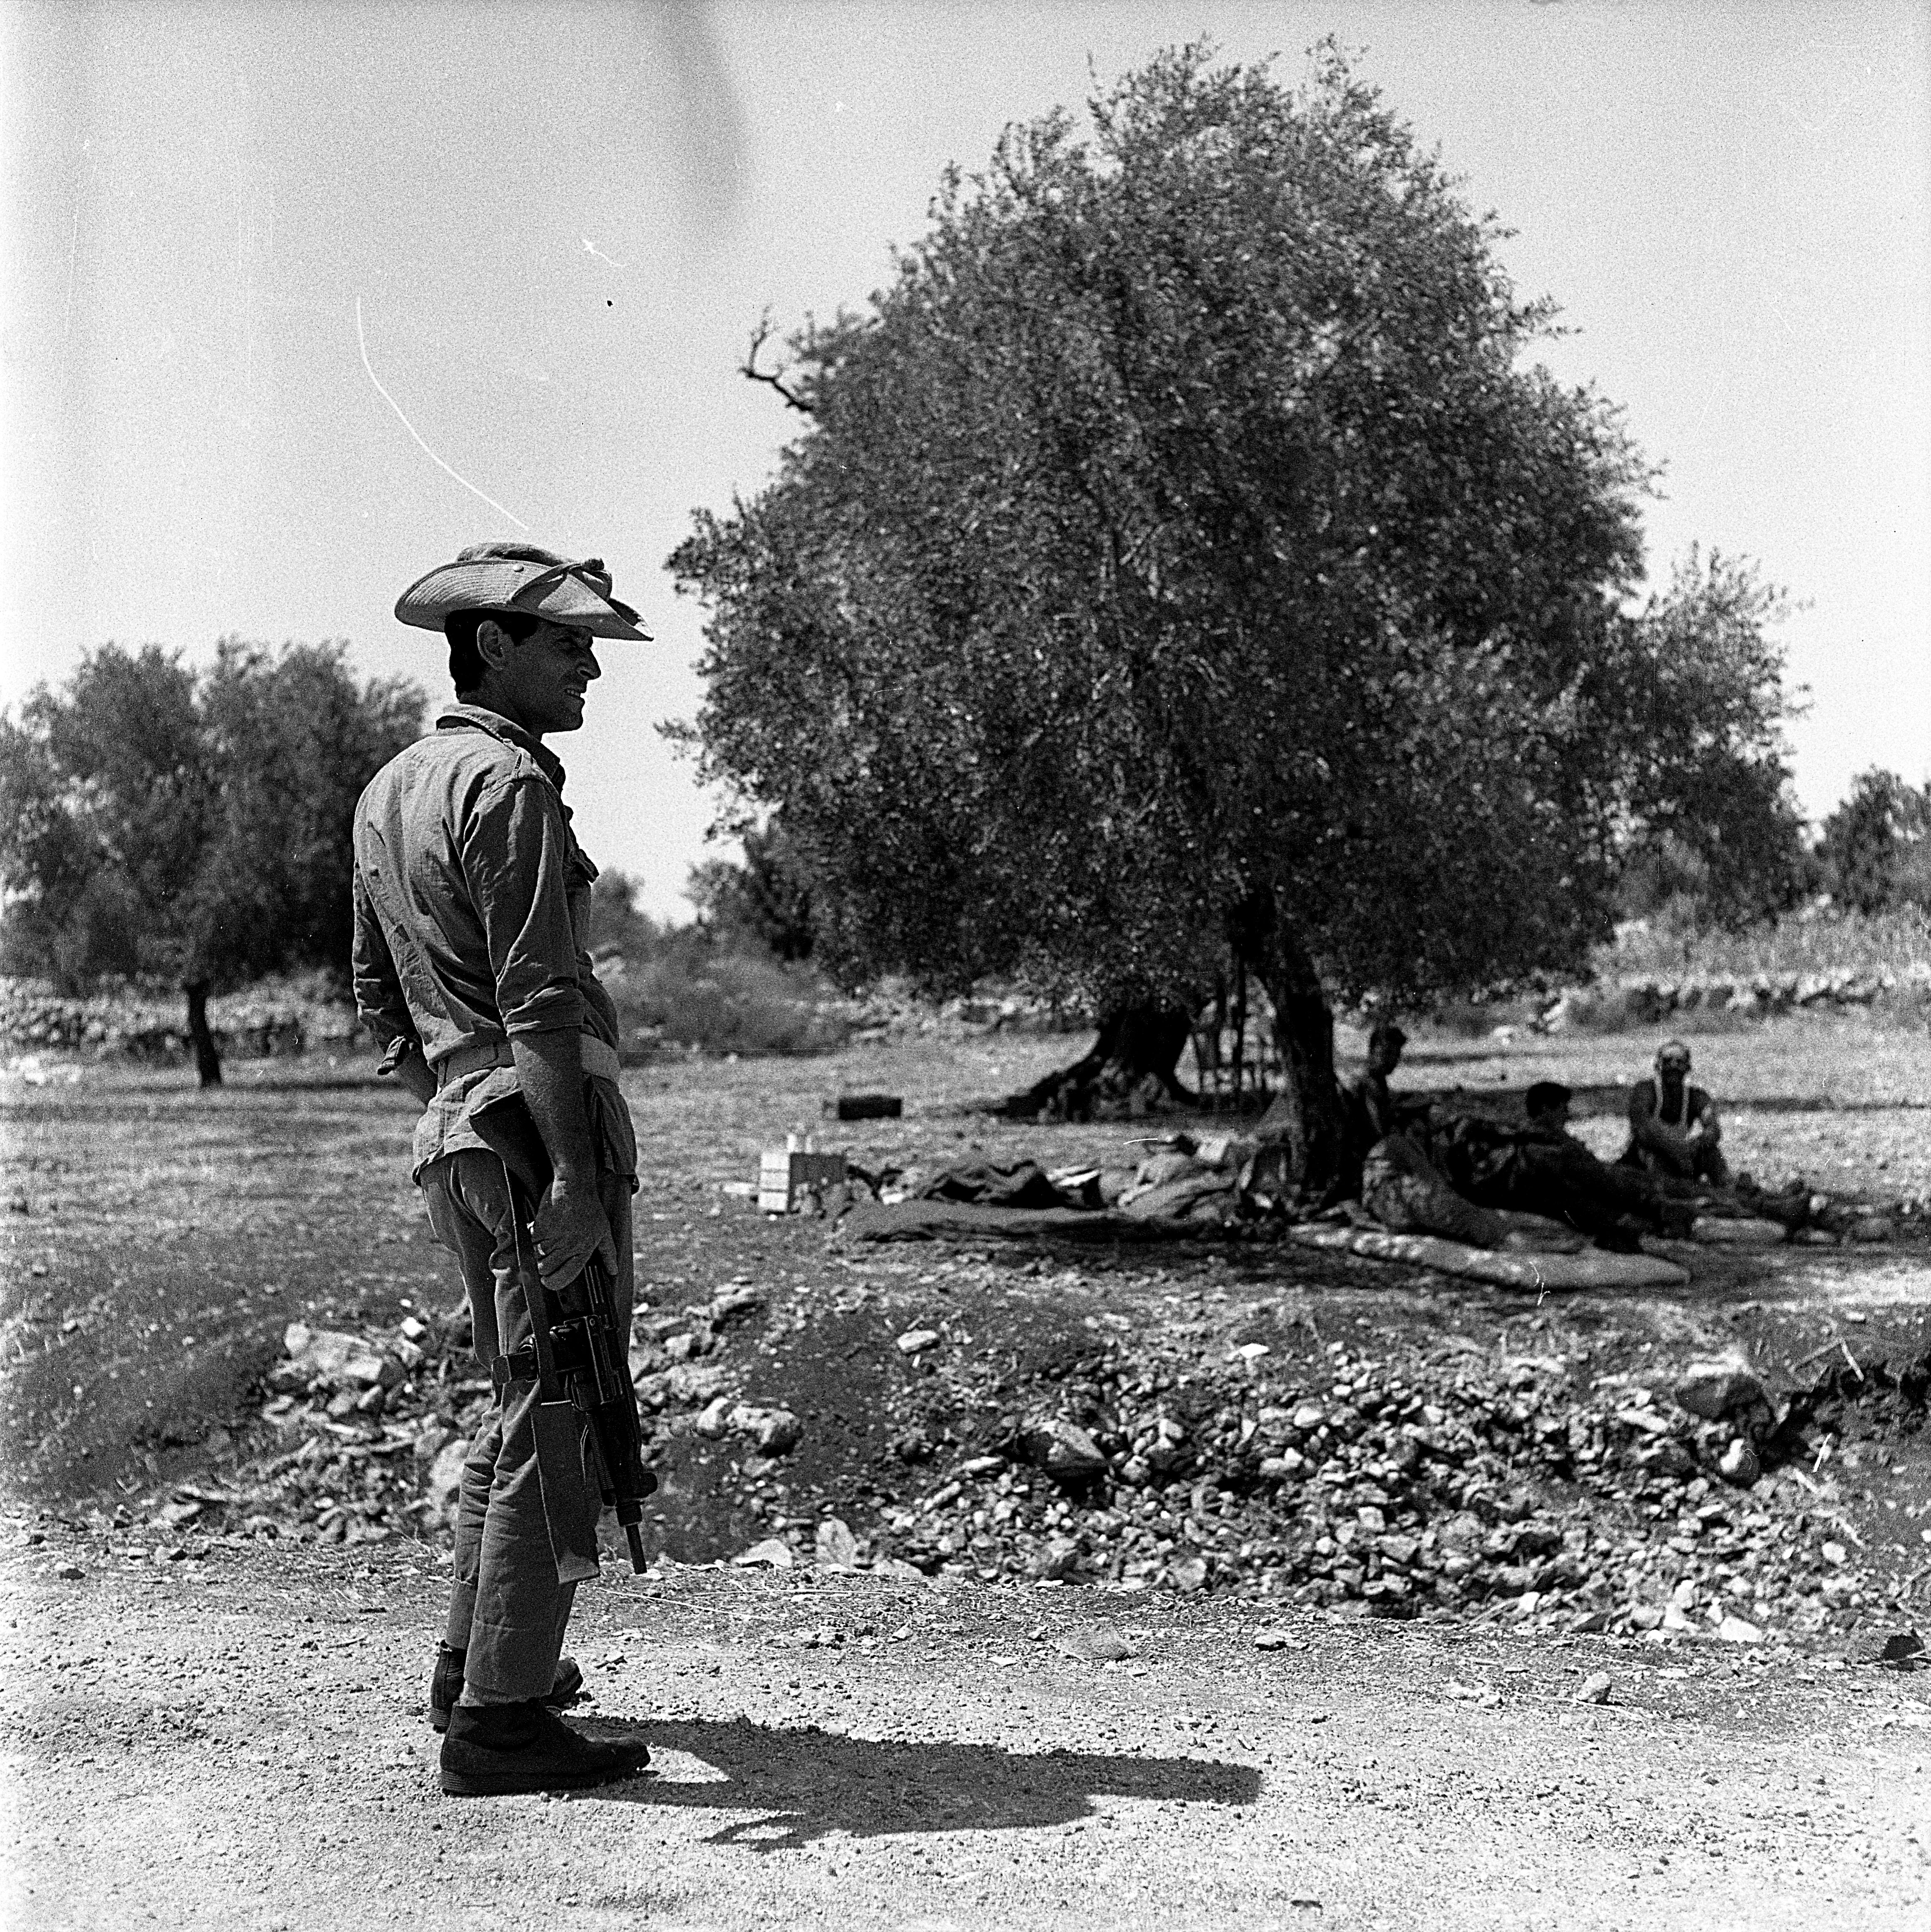  חיילי צה"ל במטע זיתים; 1968